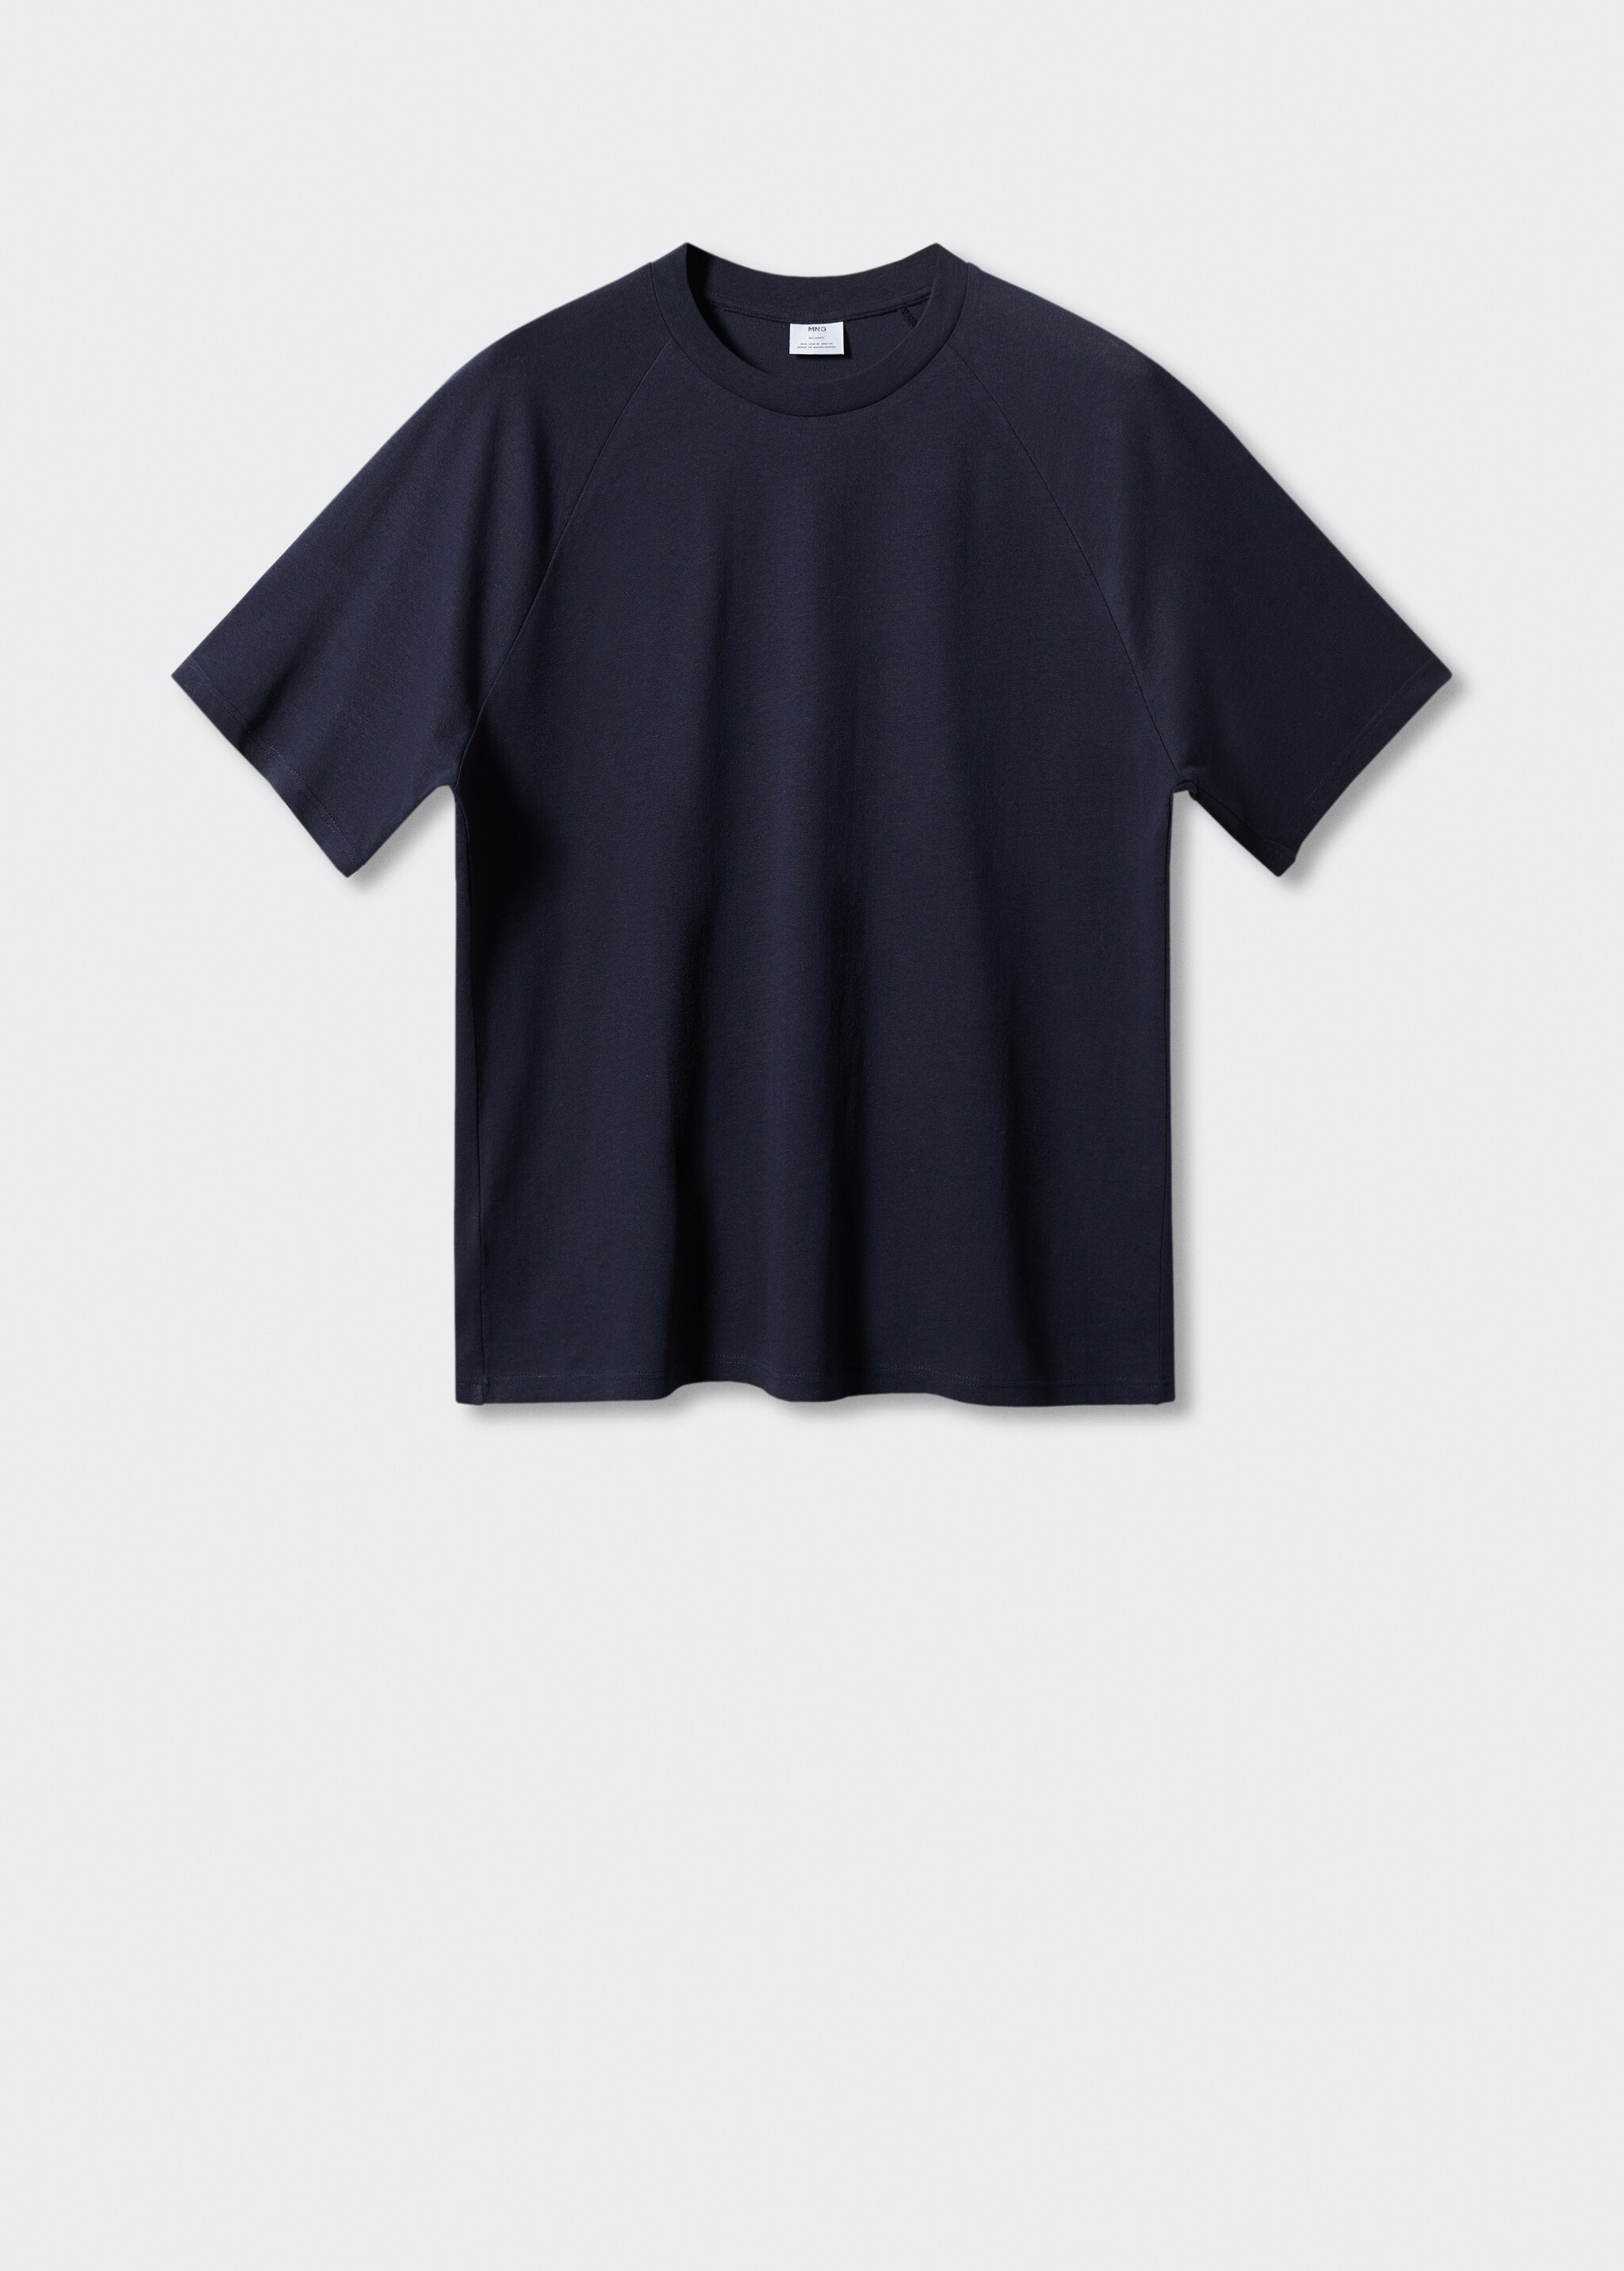 Camiseta algodón-lino textura - Artículo sin modelo